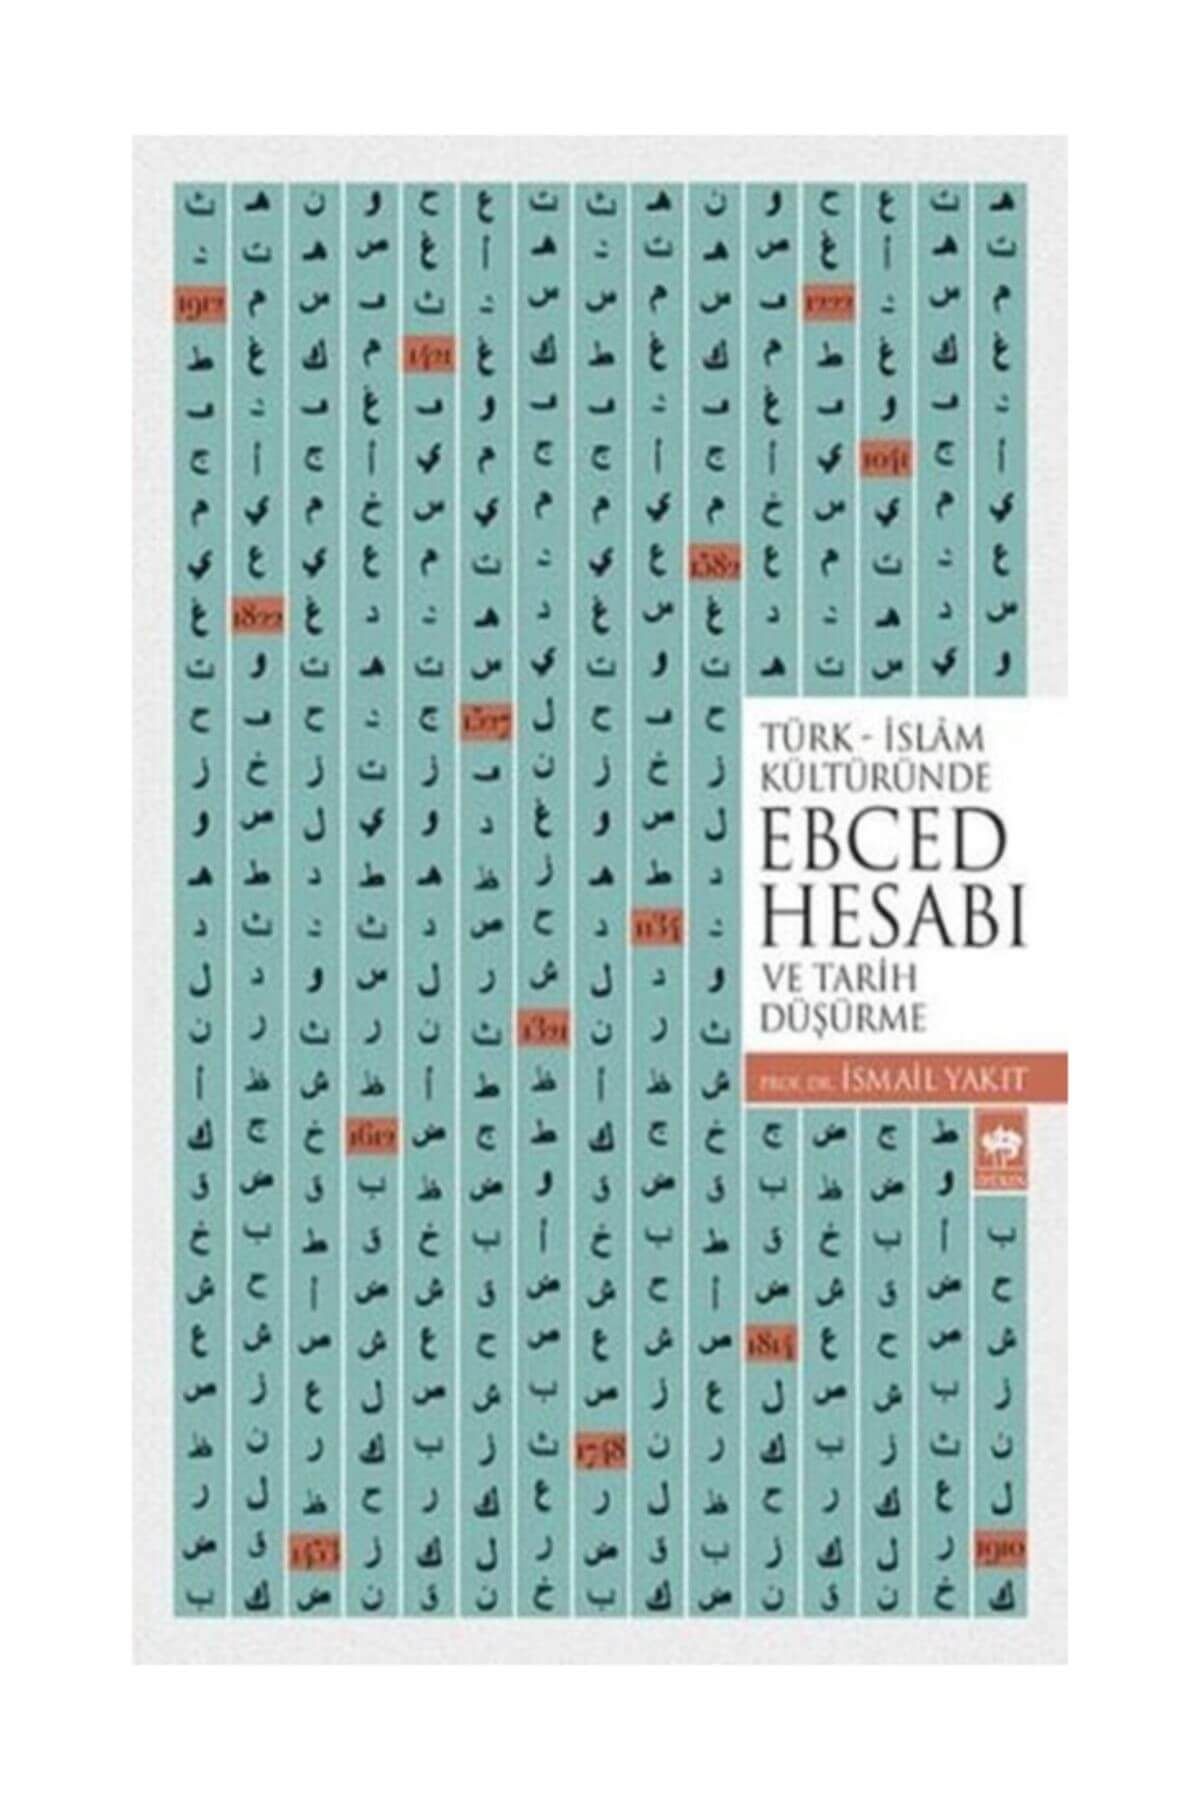 Ötüken Neşriyat Türk-islam Kültüründe Ebced Hesabı Ve Tarih Düşürme - Ismail Yakıt 9789754370843